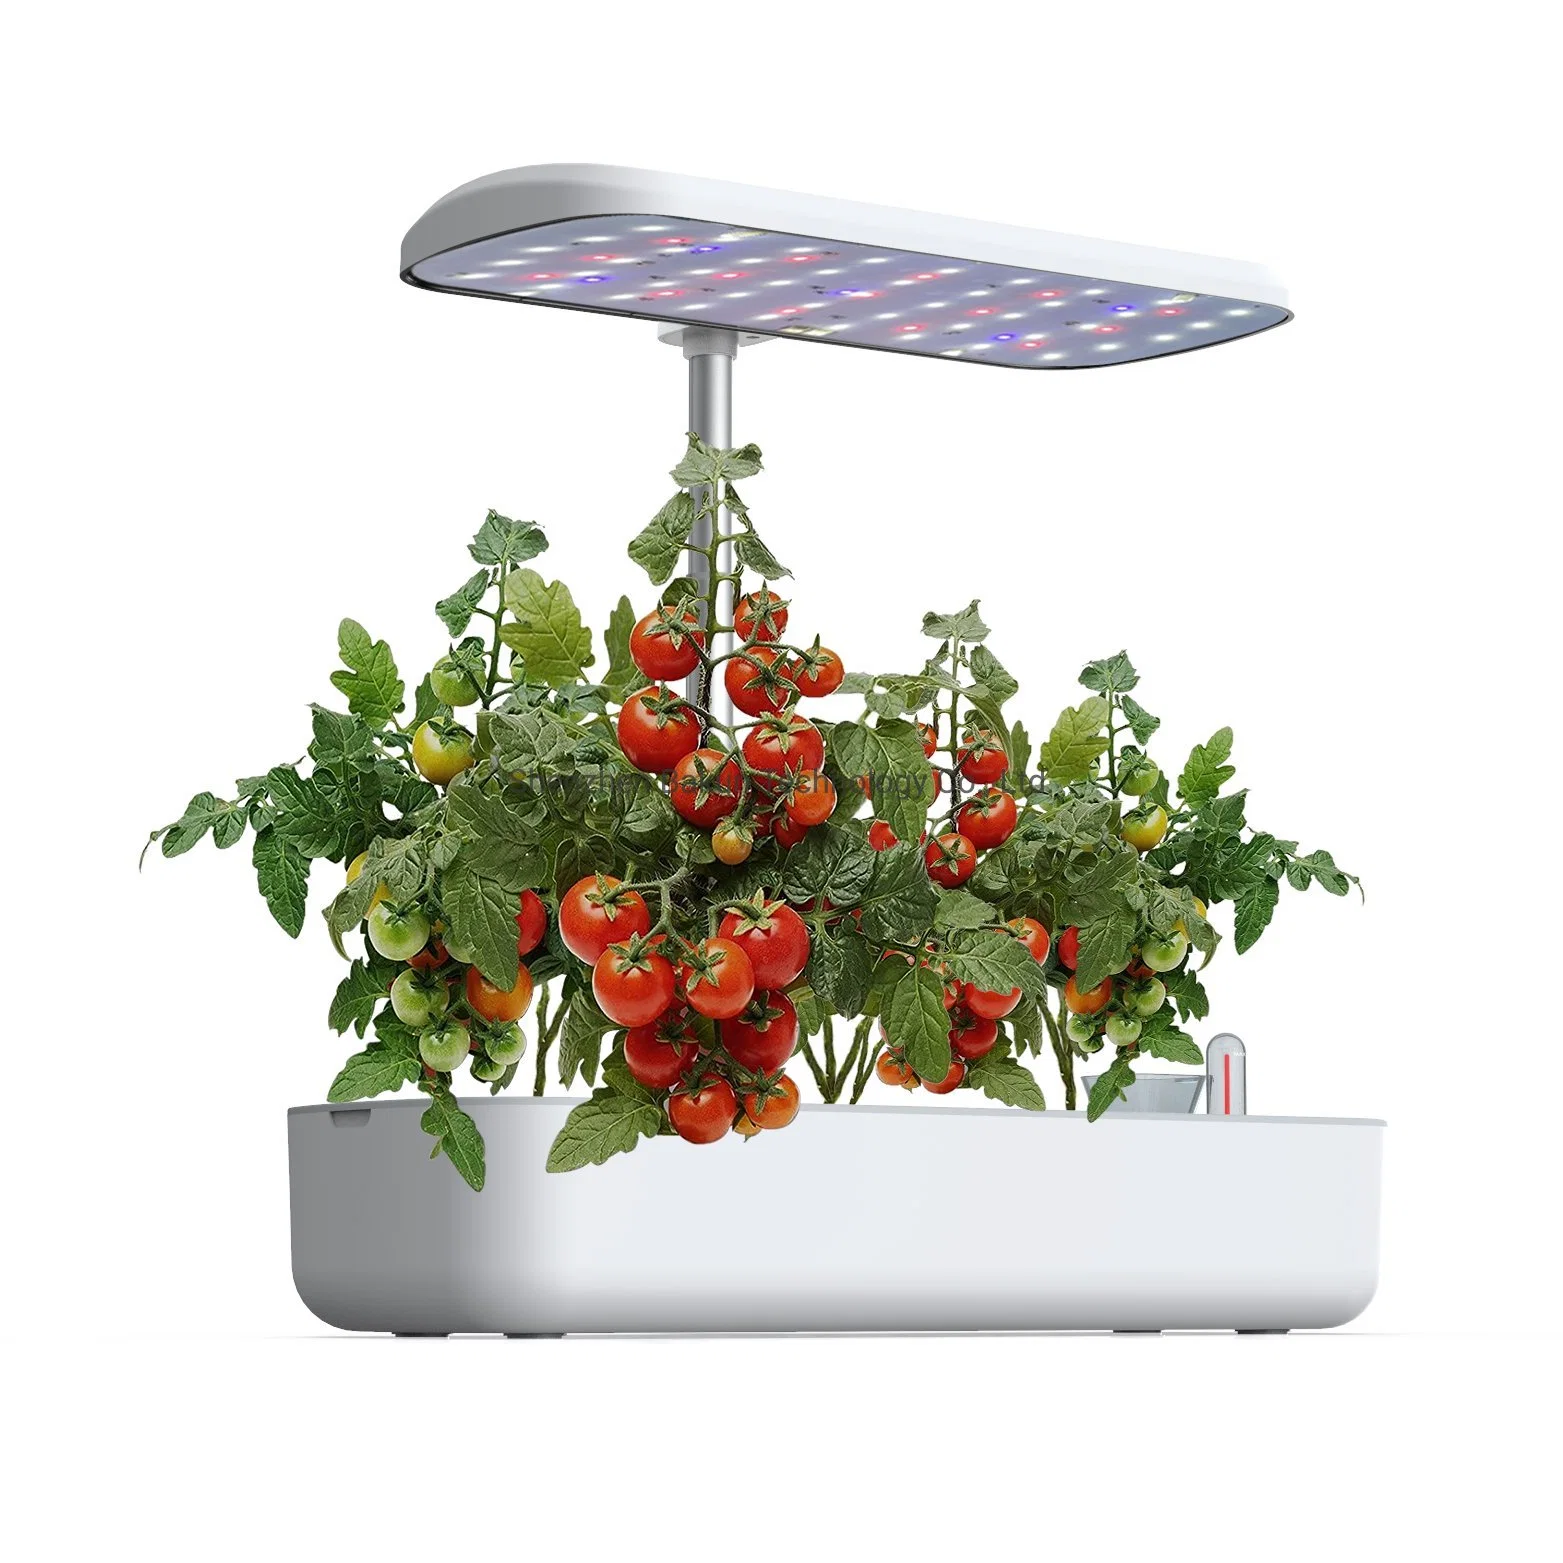 مجموعة الطيف الترددي LED زراعة النباتات النباتية النمو الذكي Hyroponic الزراعة Hydroponic نظام المبذرة